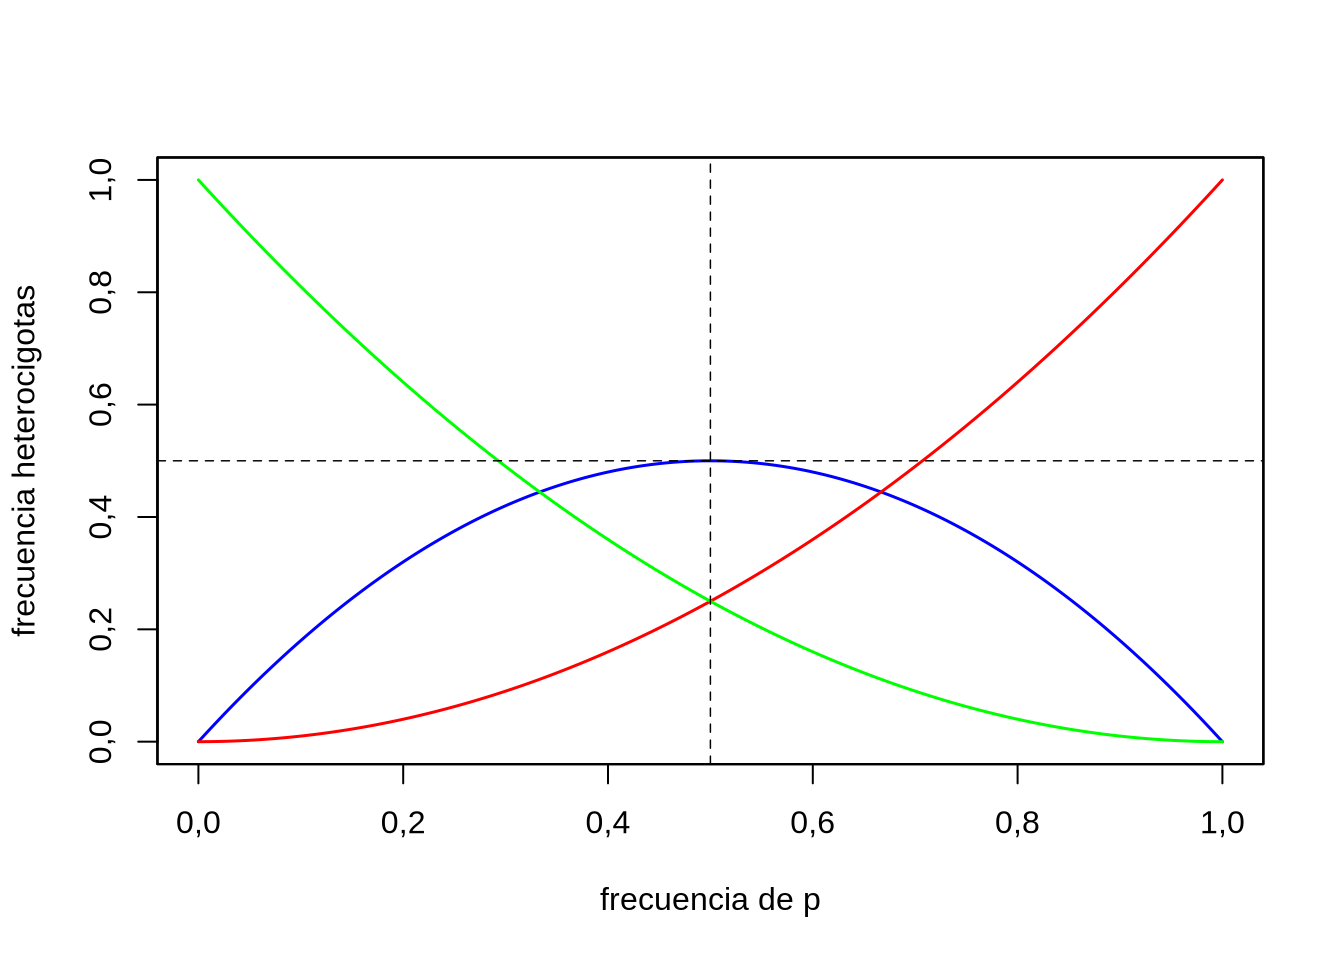 Frecuencia de heterocigotas en función de la frecuencia del alelo $p$ en un modelo de un locus con dos alelos, bajo equilibrio Hardy-Weinberg. En azul la frecuencia de los heterocigotas, rojo y verde los homocigotas.